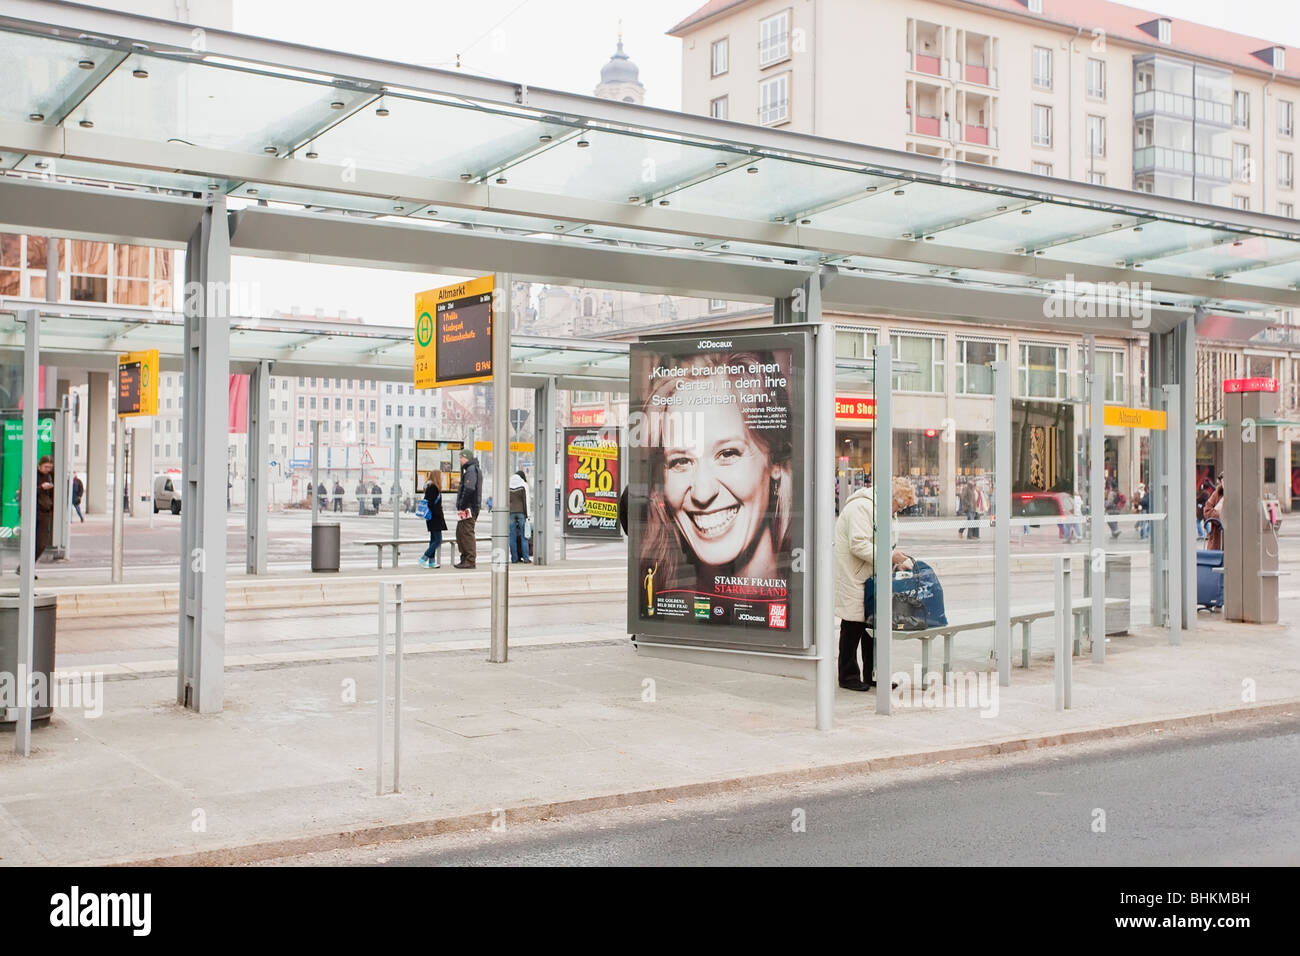 Arrêt de bus à Dresde, Allemagne Banque D'Images